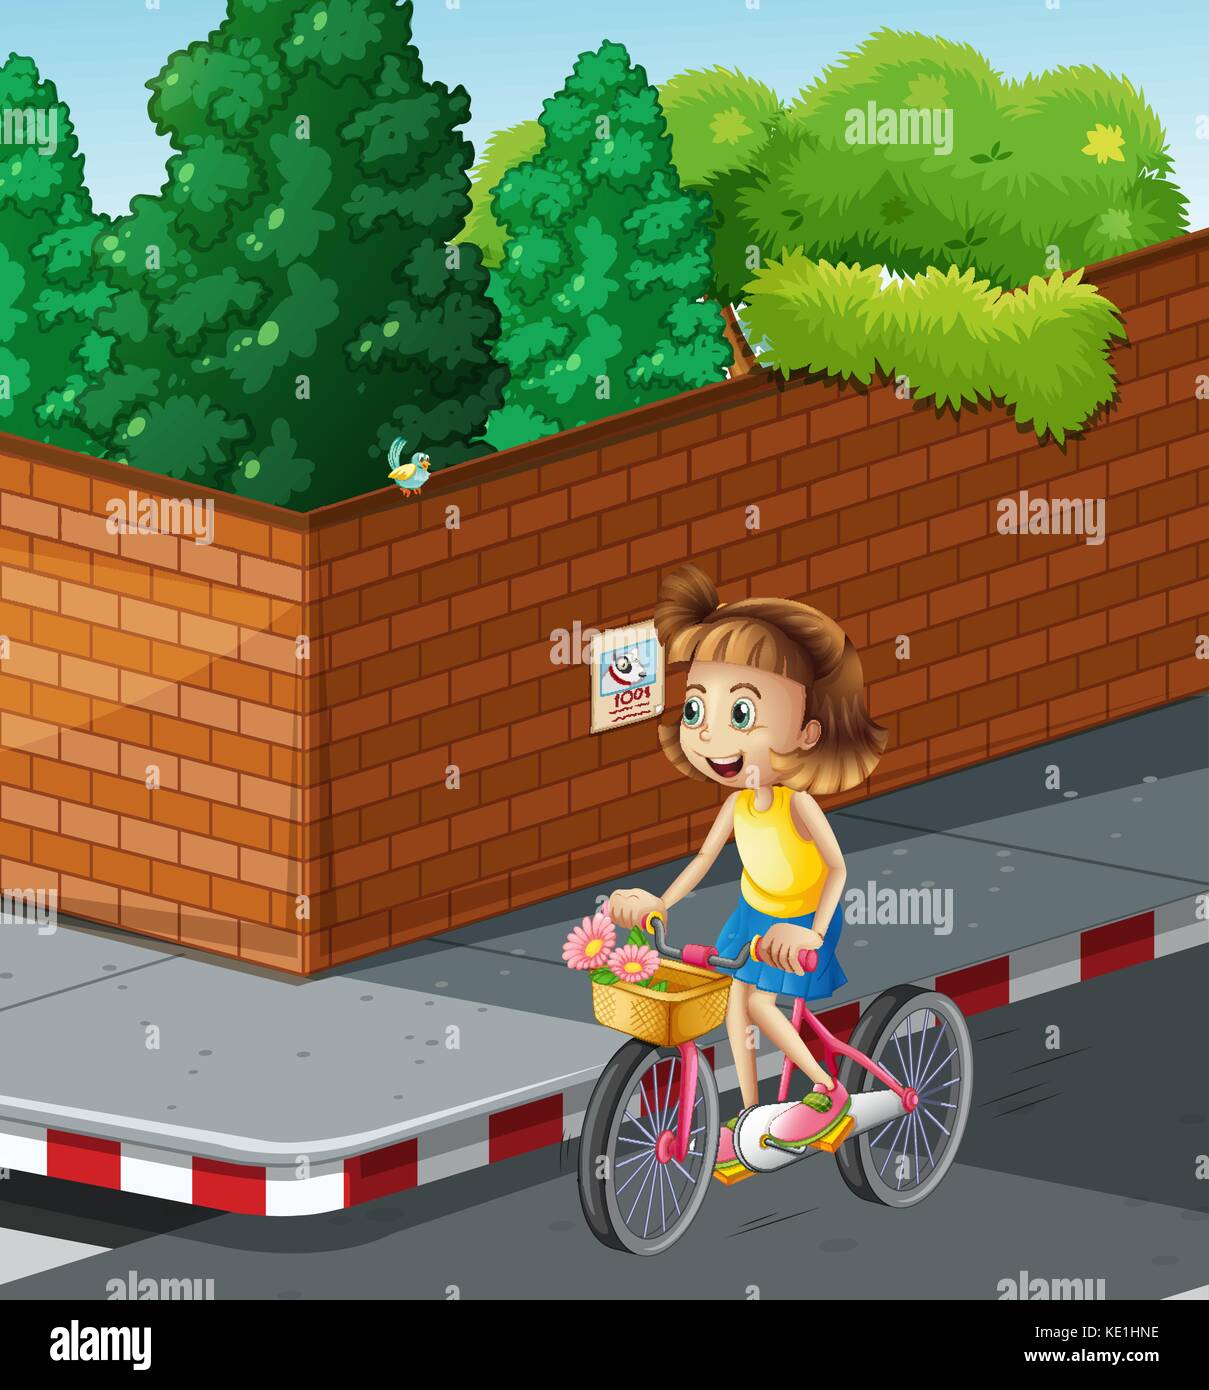 Little girl riding bike on the road illustration Stock Vector